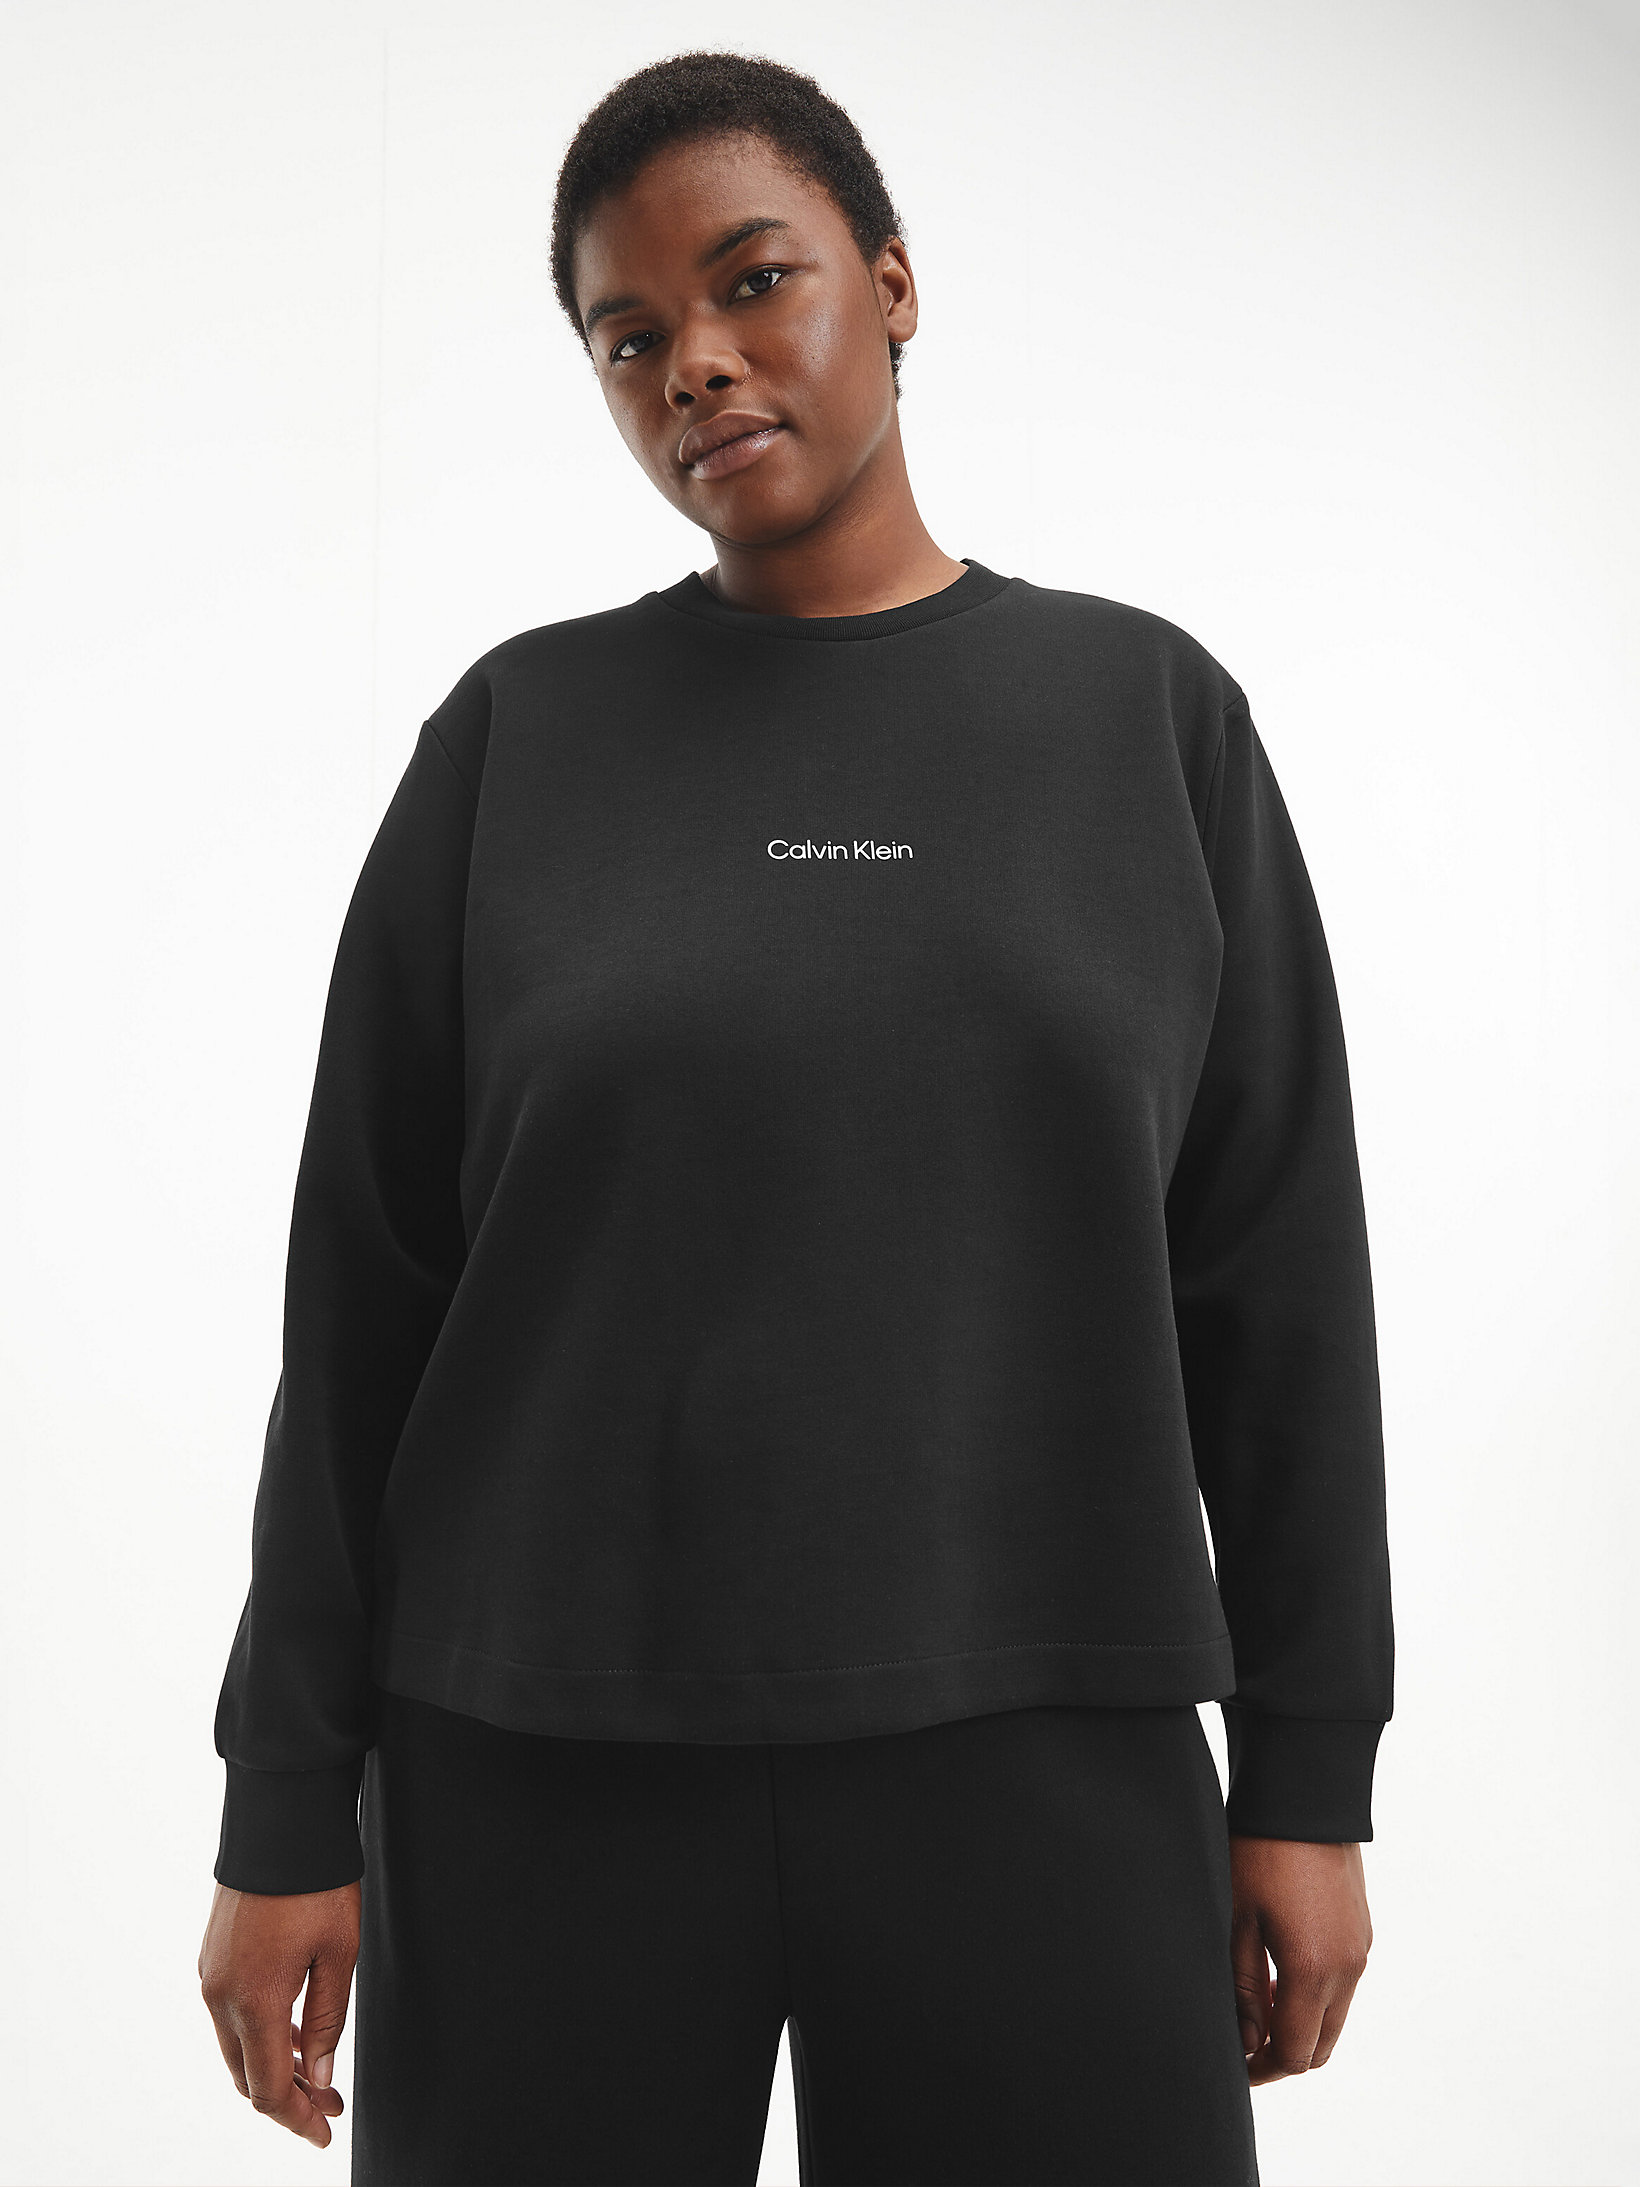 CK Black Sweatshirt Aus Bio-Baumwolle In Großen Größen undefined Damen Calvin Klein